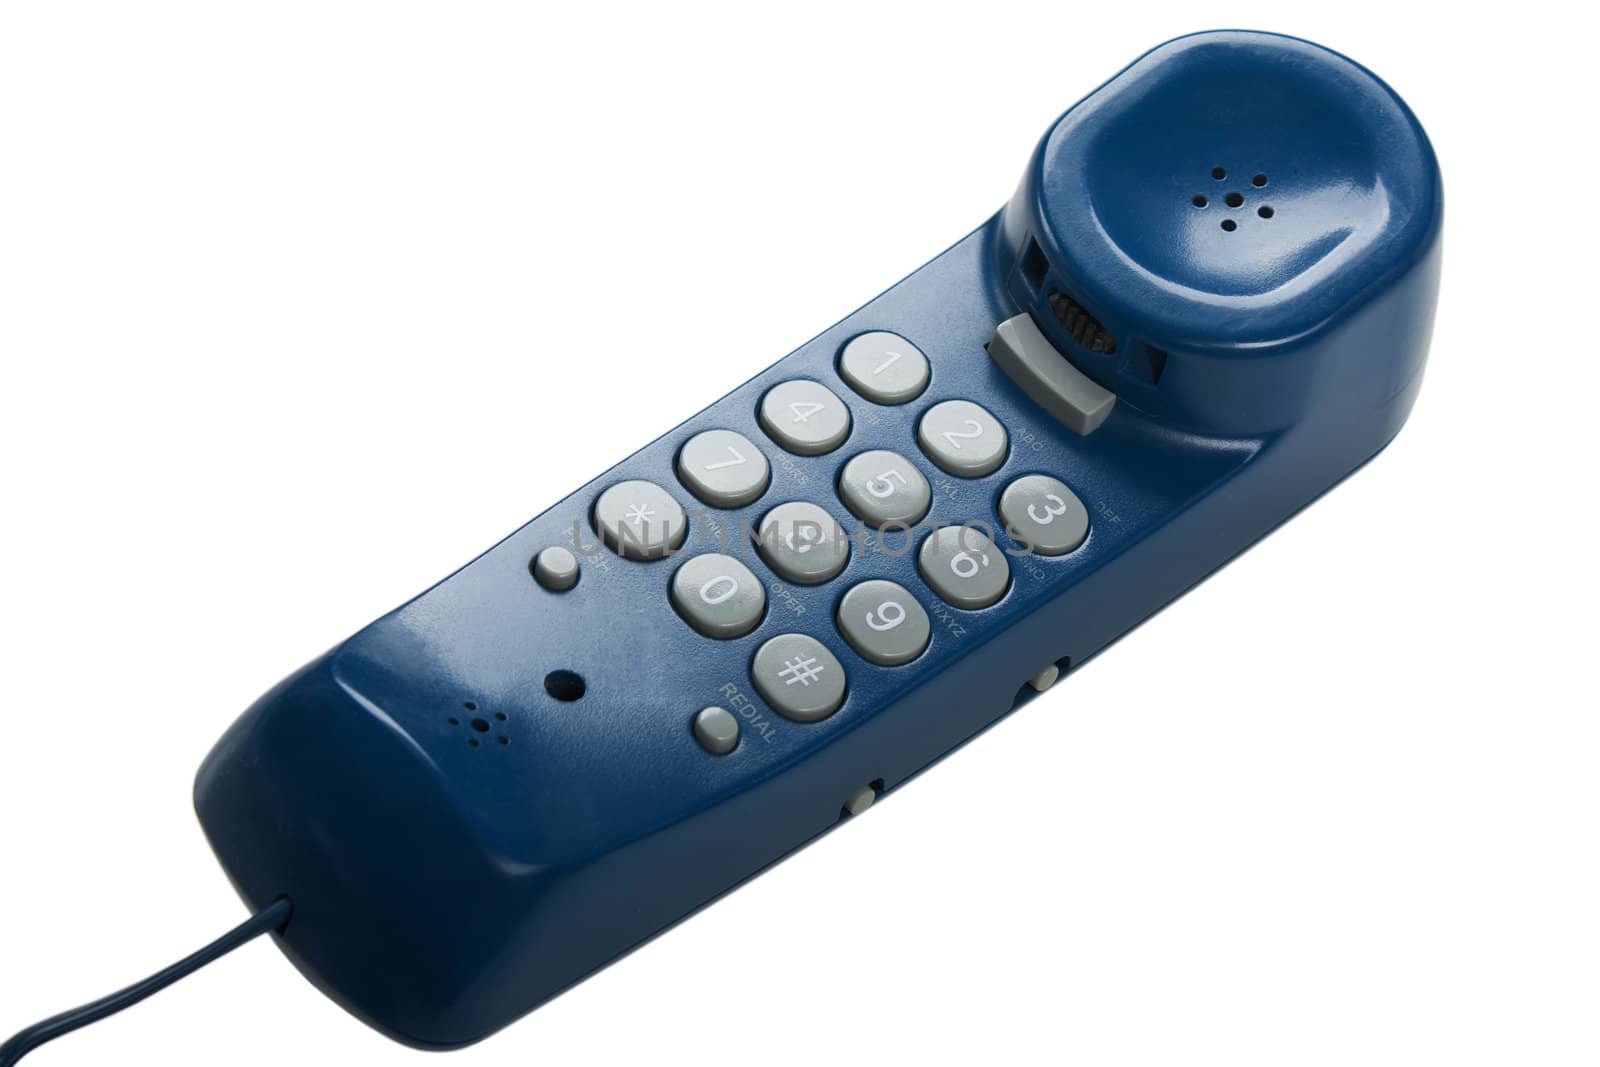 Communication telephone or phone handset isolated